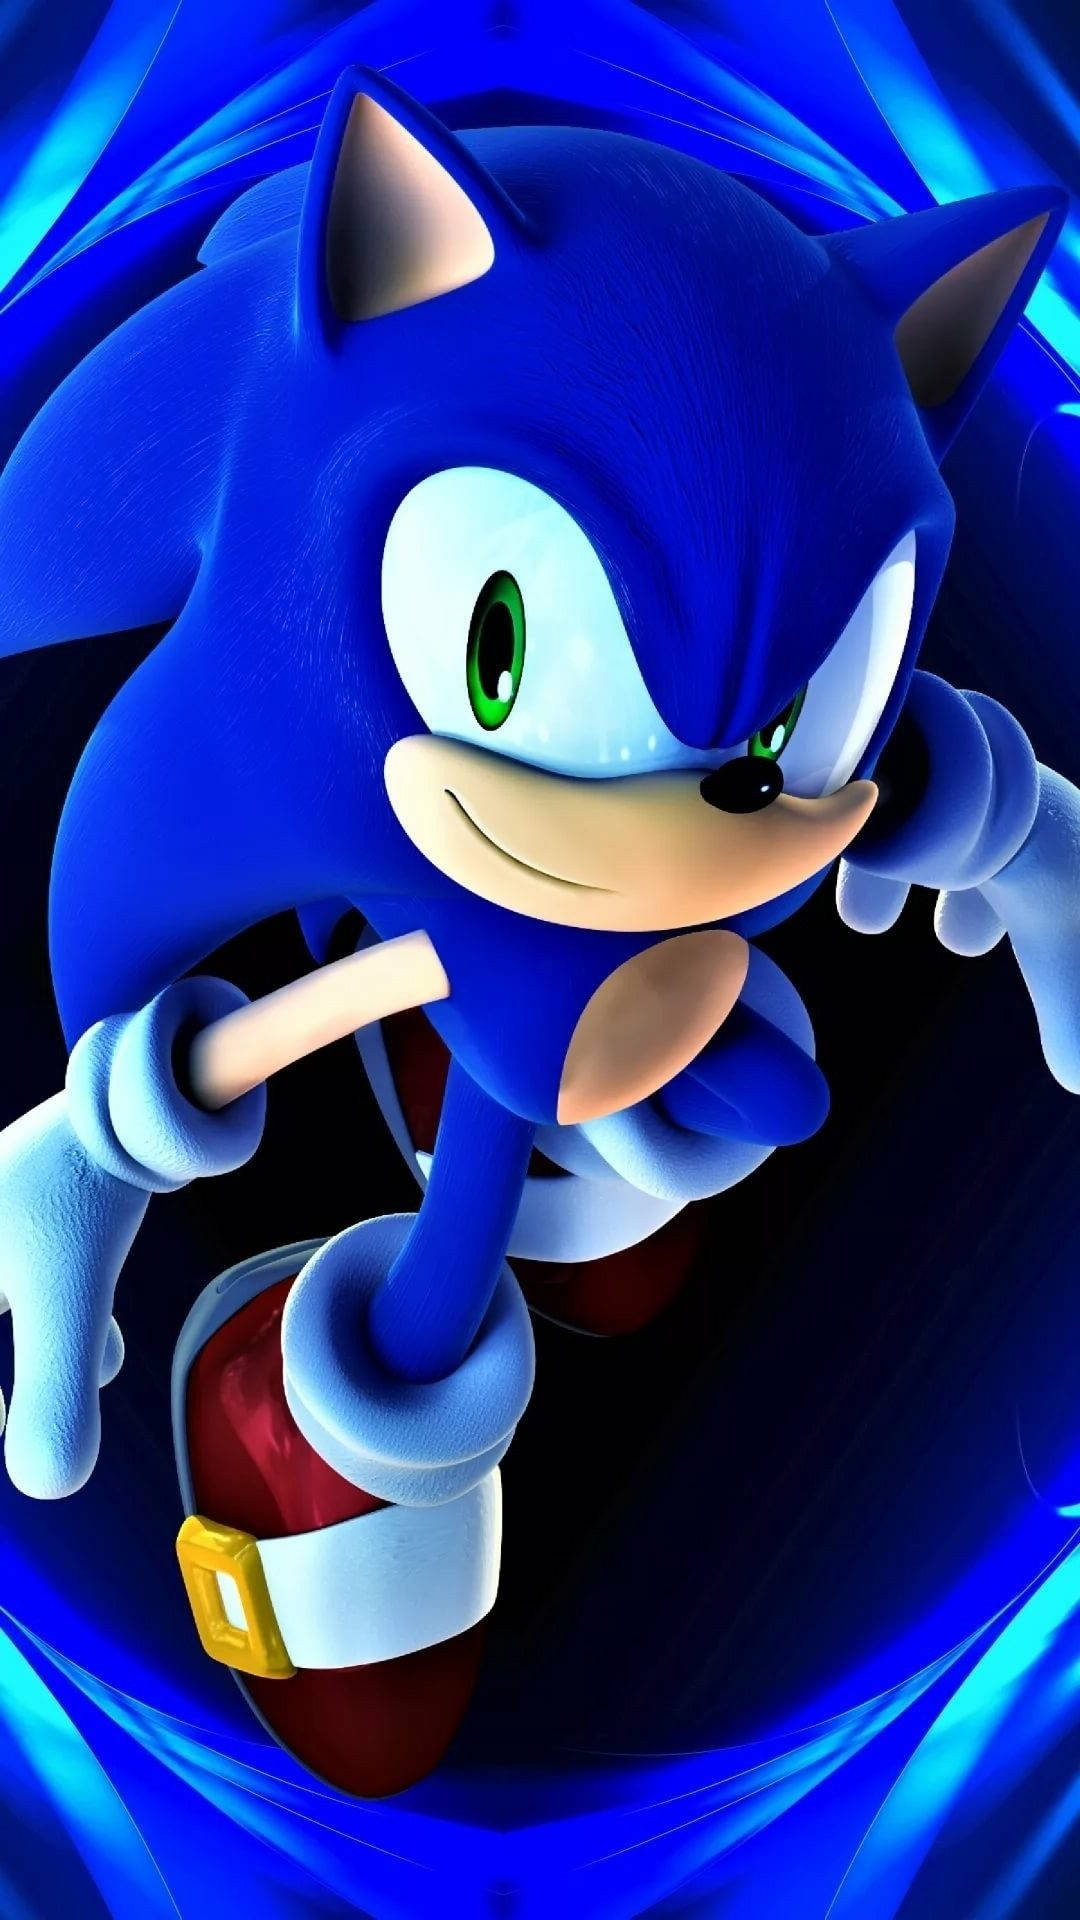 Hastighed og stil - Mød Cool Sonic Wallpaper